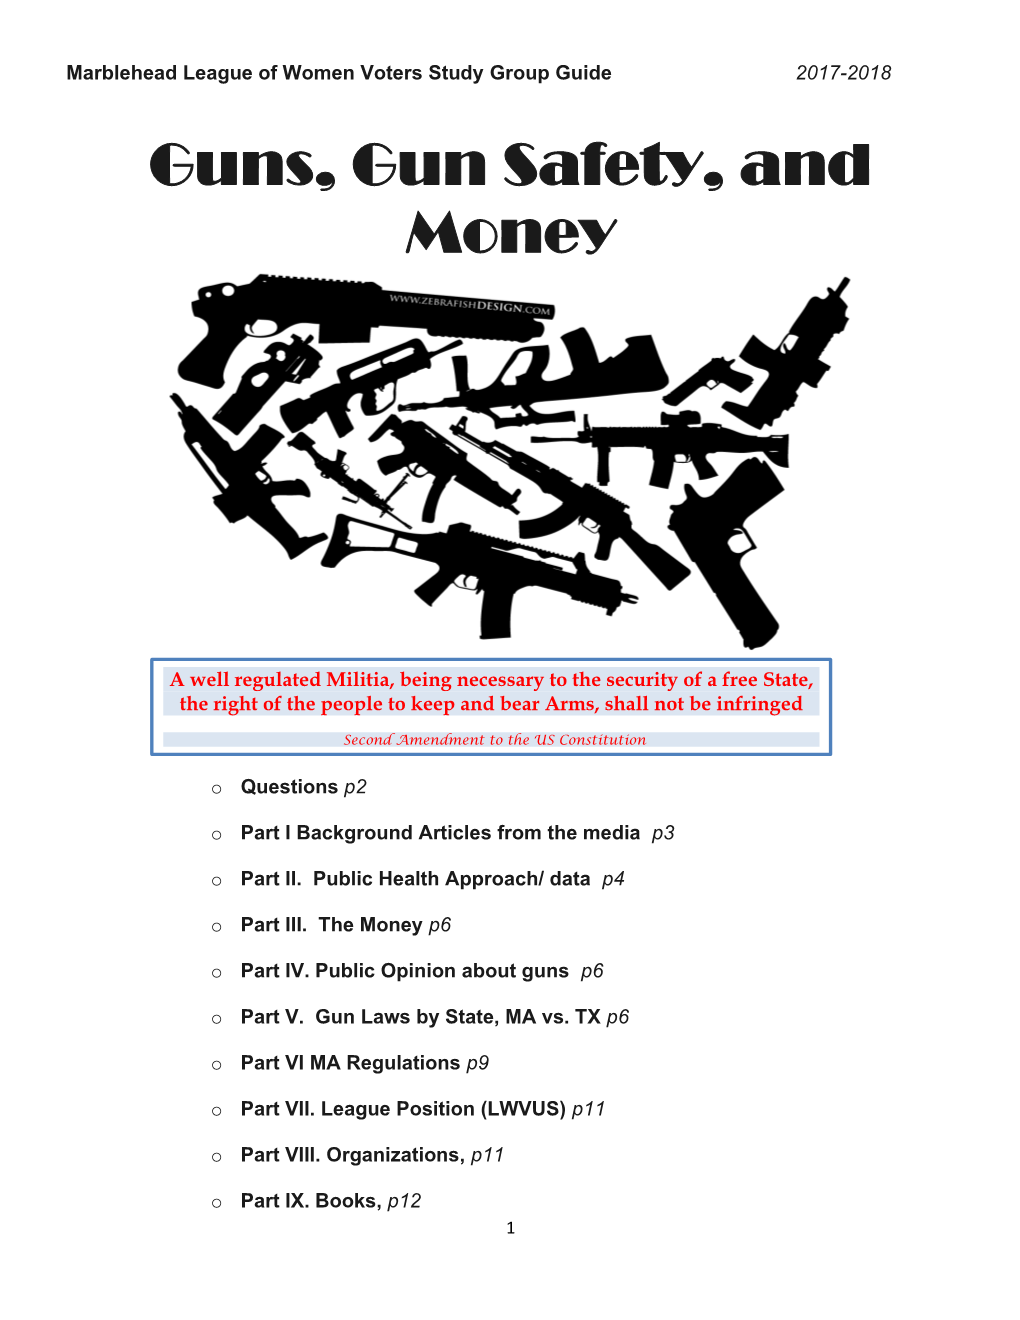 Guns, Gun Safety, and Money